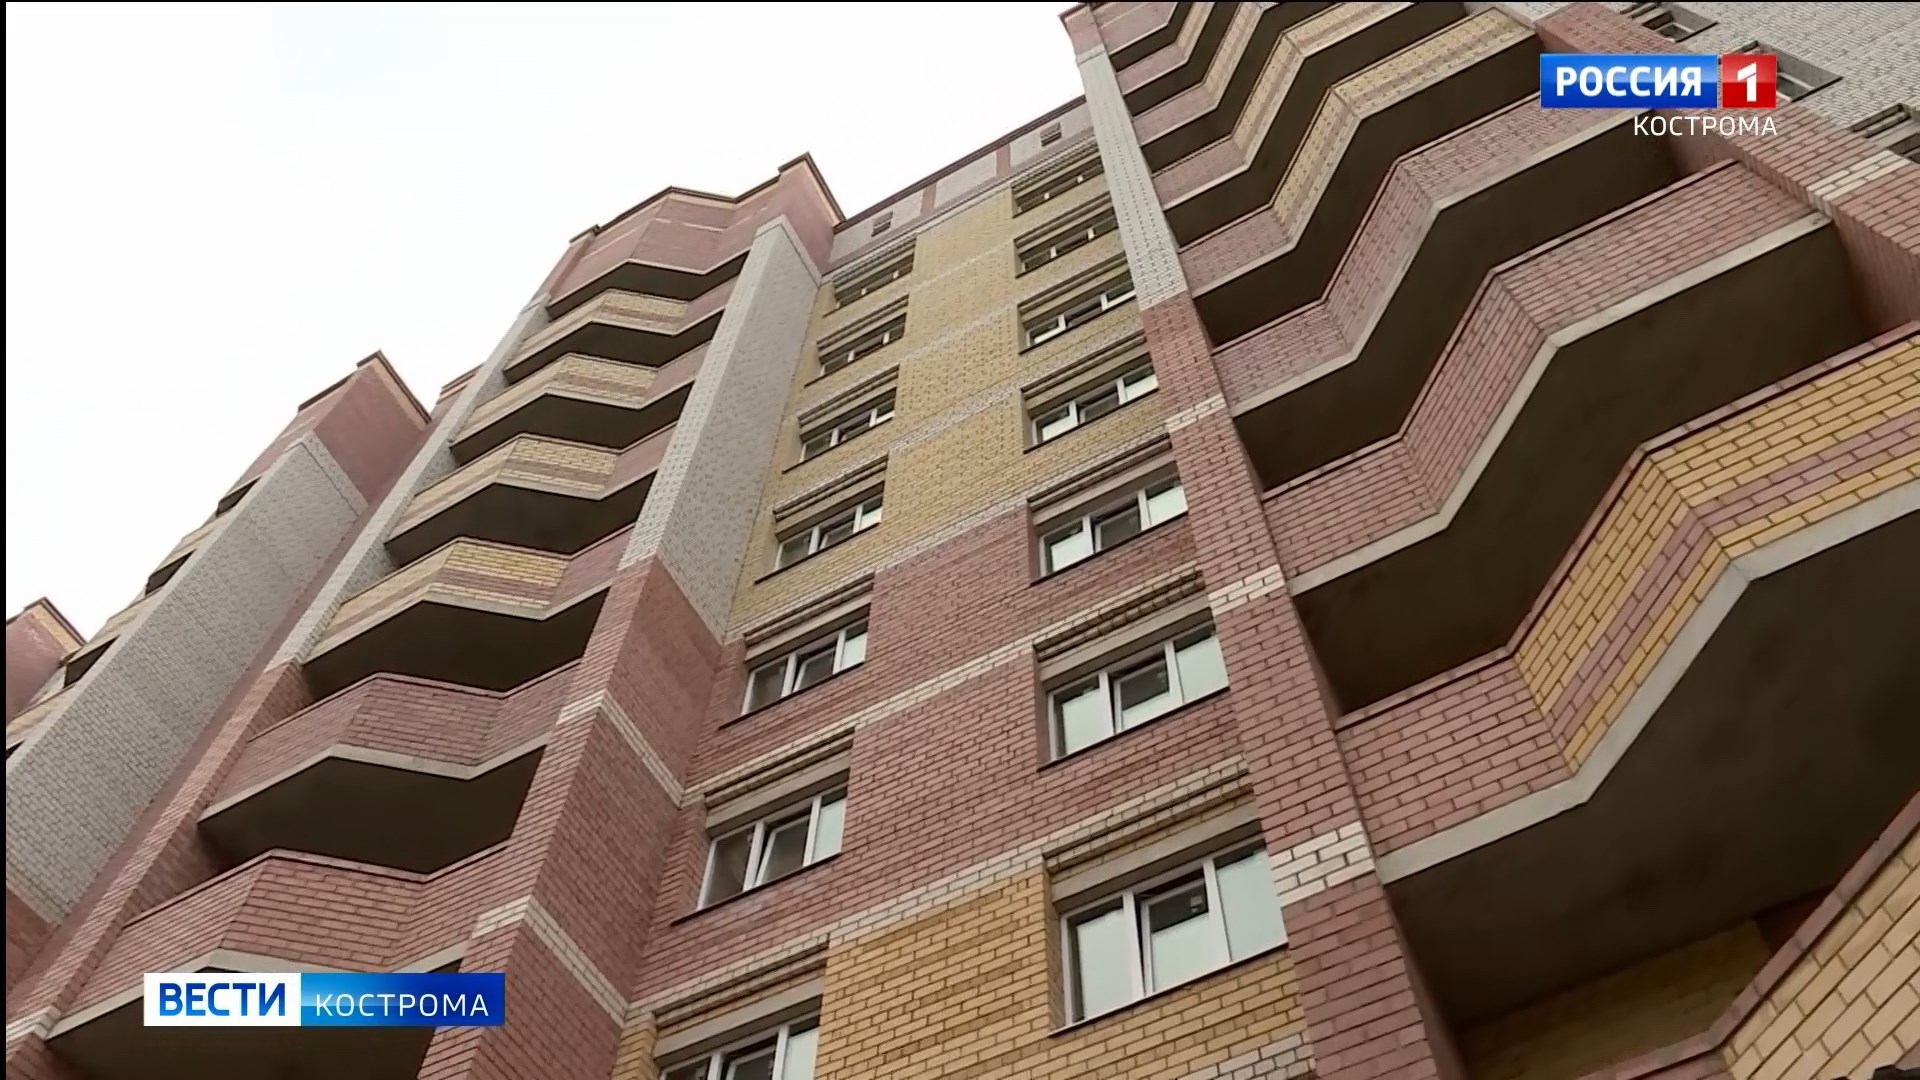 Ключи от квартир получили в Костроме дольщики ещё одной проблемной многоэтажки